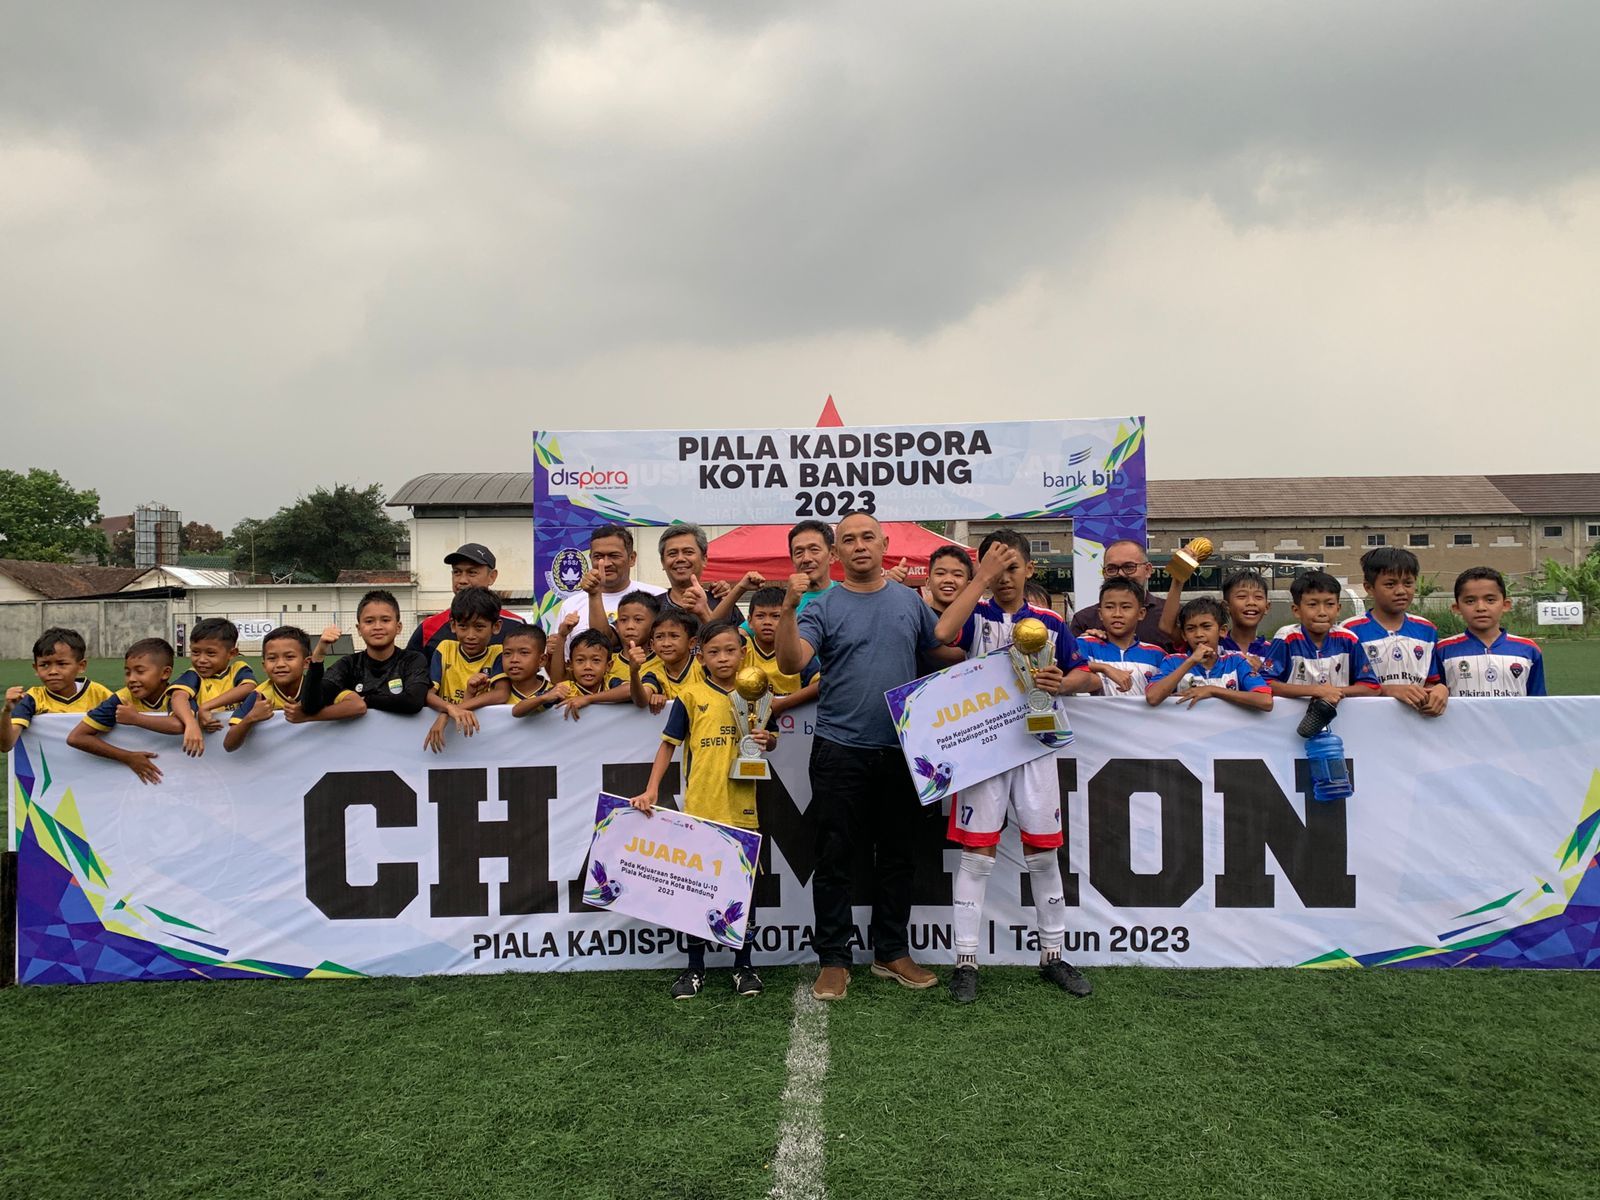 Seventhree dan PR Bandung Pro Menjuarai Festival Sepakbola KU-10 dan KU-12 Piala Kadispora 2023